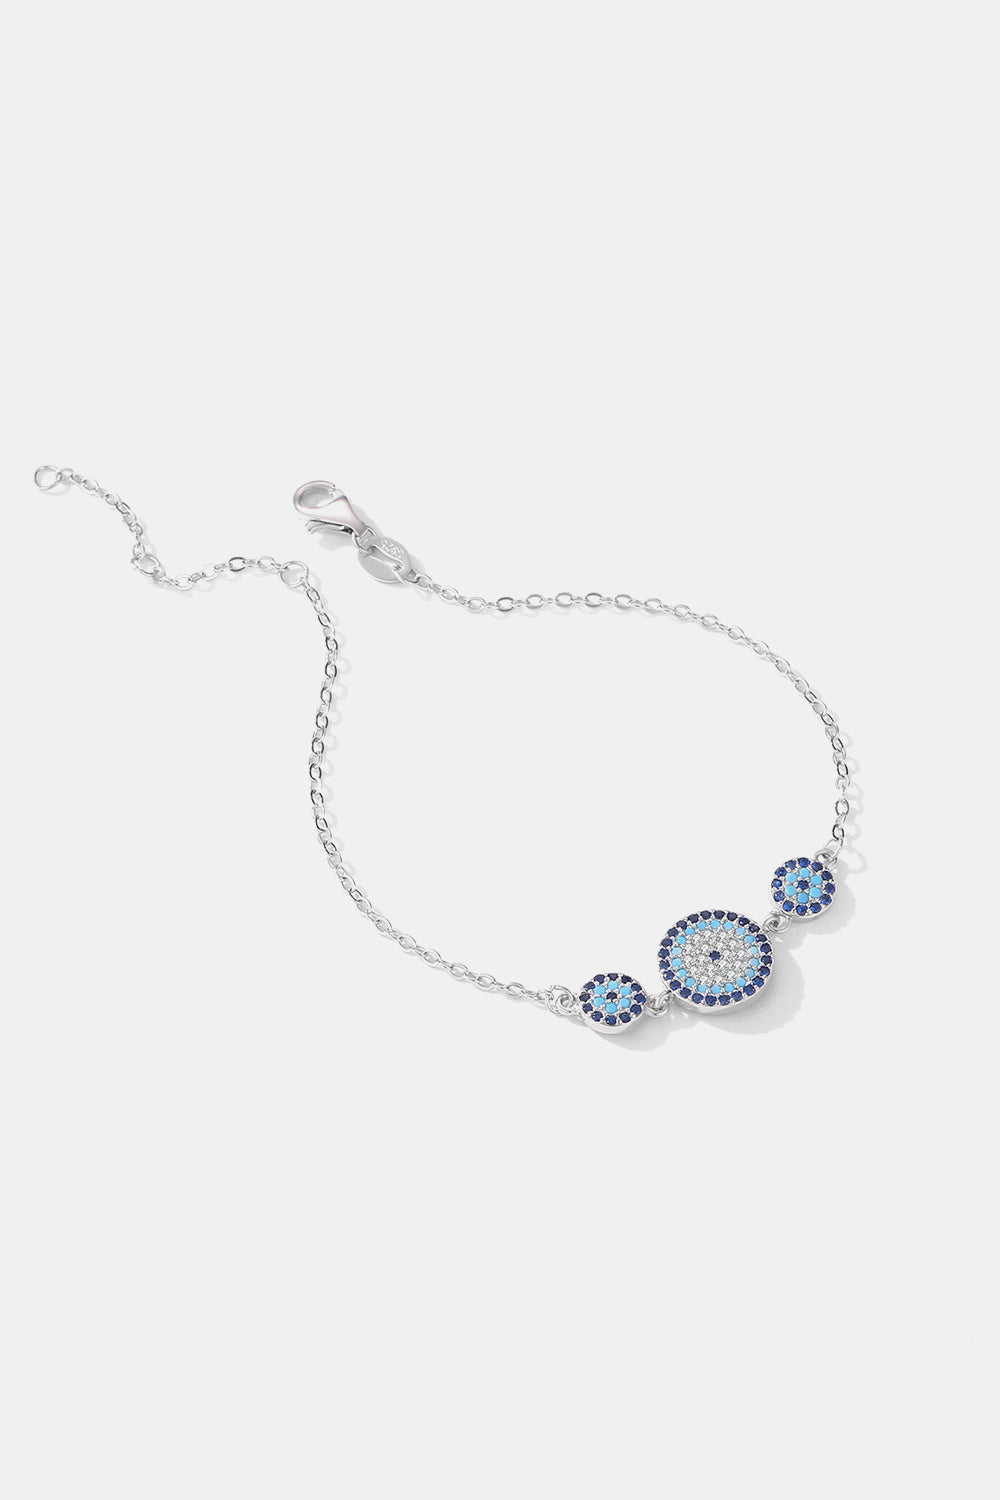 925 Sterling Silver Artificial Turquoise Bracelet - Women’s Jewelry - Bracelets - 3 - 2024